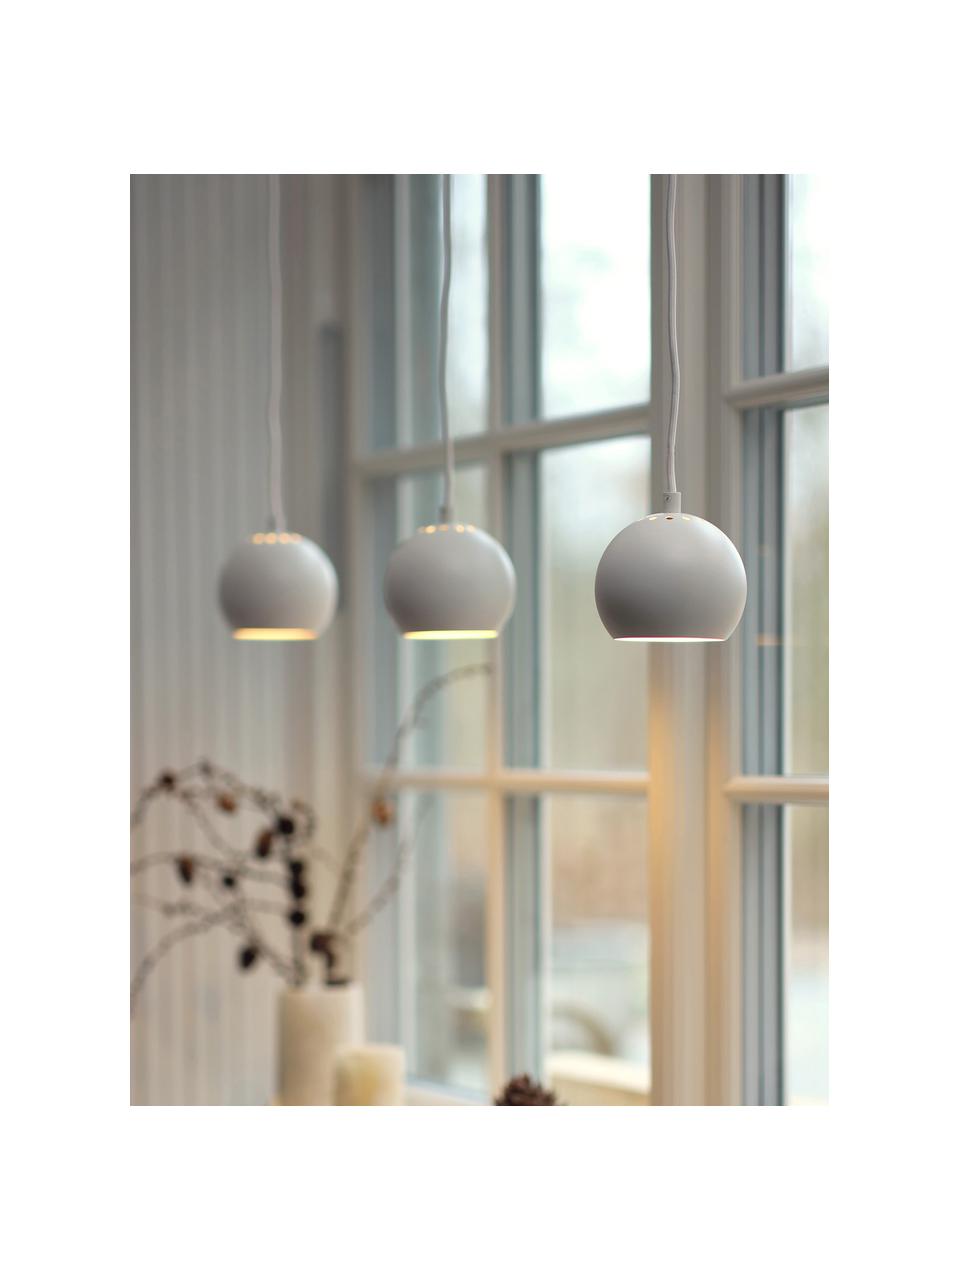 Lámpara de techo pequeña Ball, Cable: cubierto en tela, Blanco, mate, Ø 12 x Al 10 cm